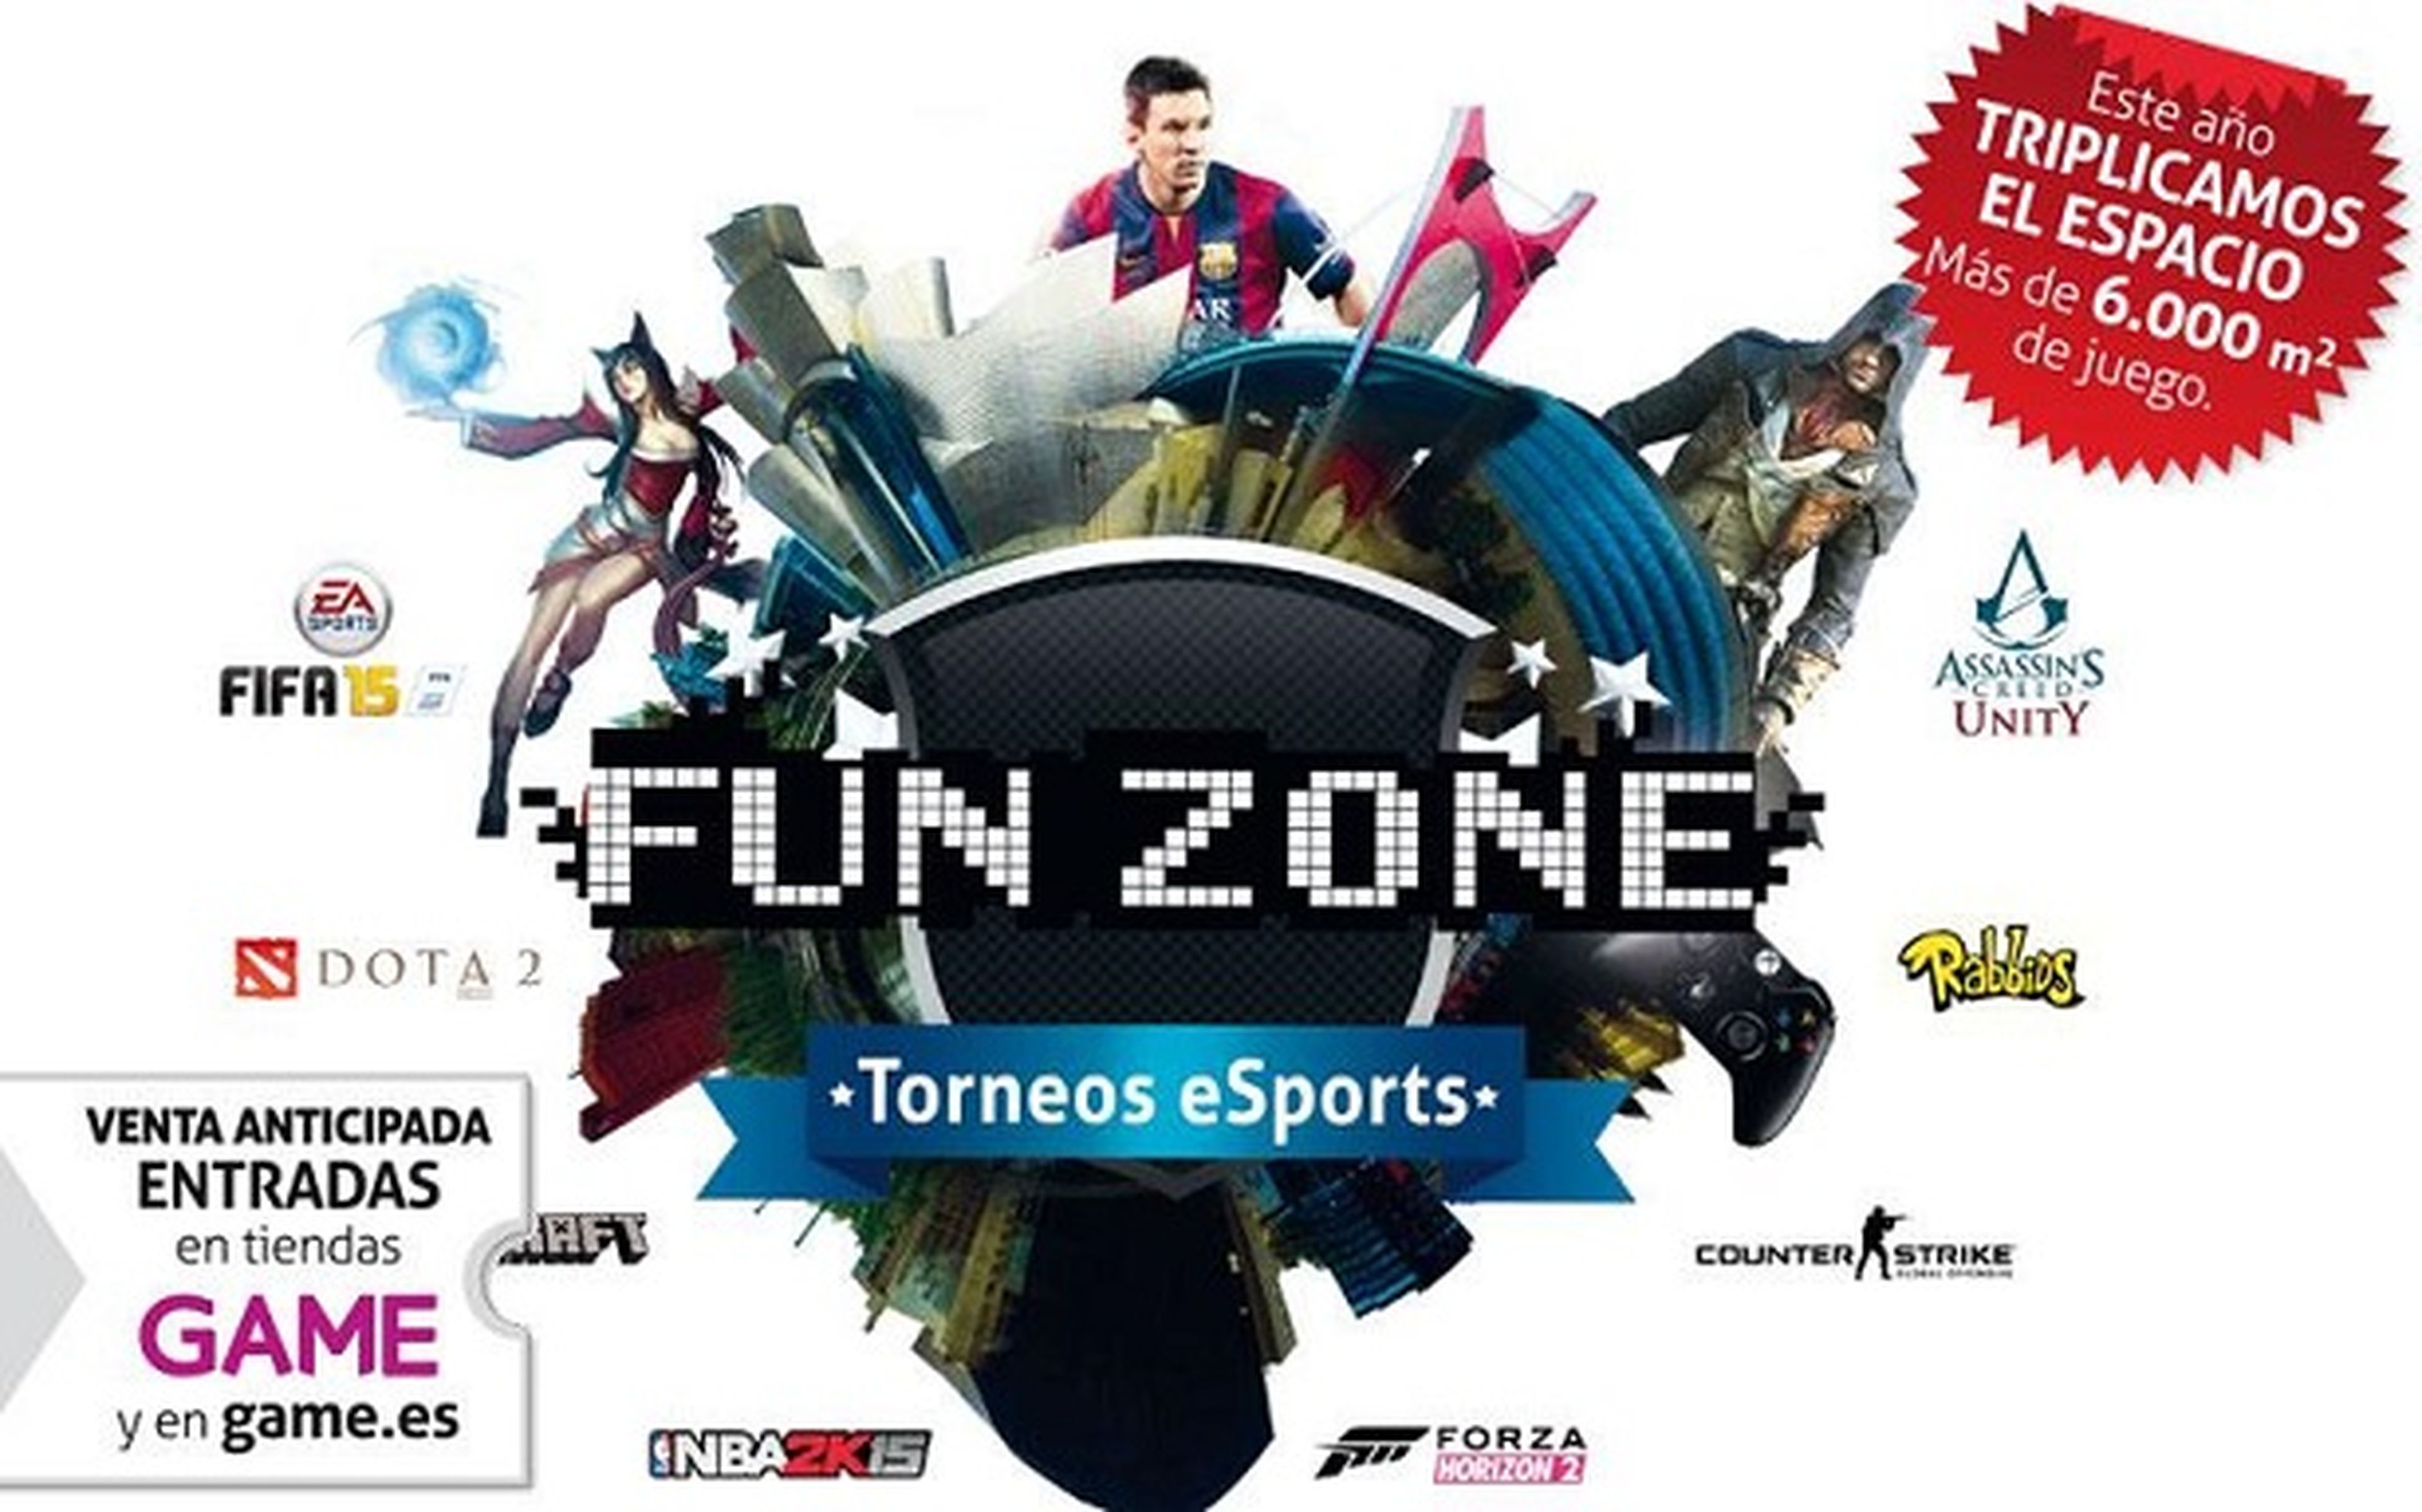 Fun & Serious triplica el espacio para los eSports en su Fun Zone